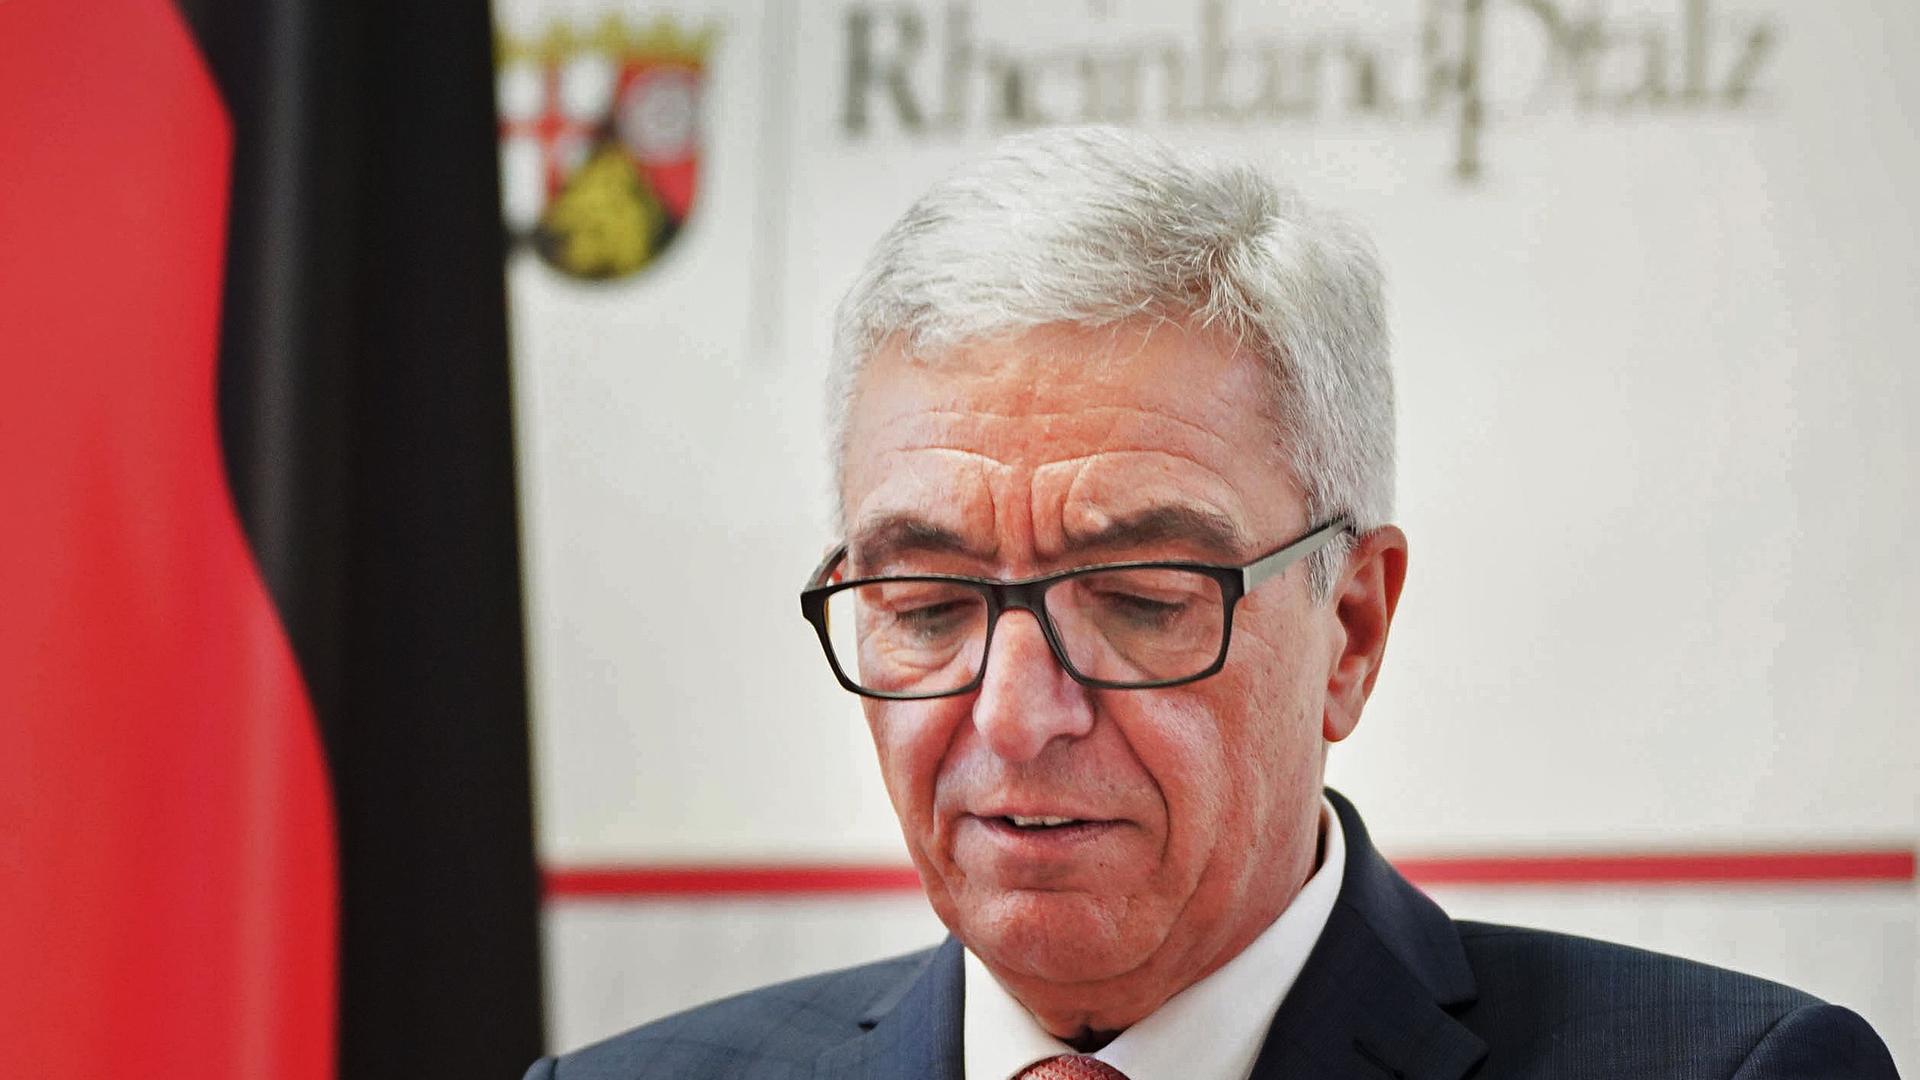 Rheinland-Pfalz, Mainz: Der rheinland-pfälzische Innenminister Roger Lewentz (SPD) spricht bei einer kurzen Pressekonferenz, bei der er seinen Rücktritt bekanntgibt. 